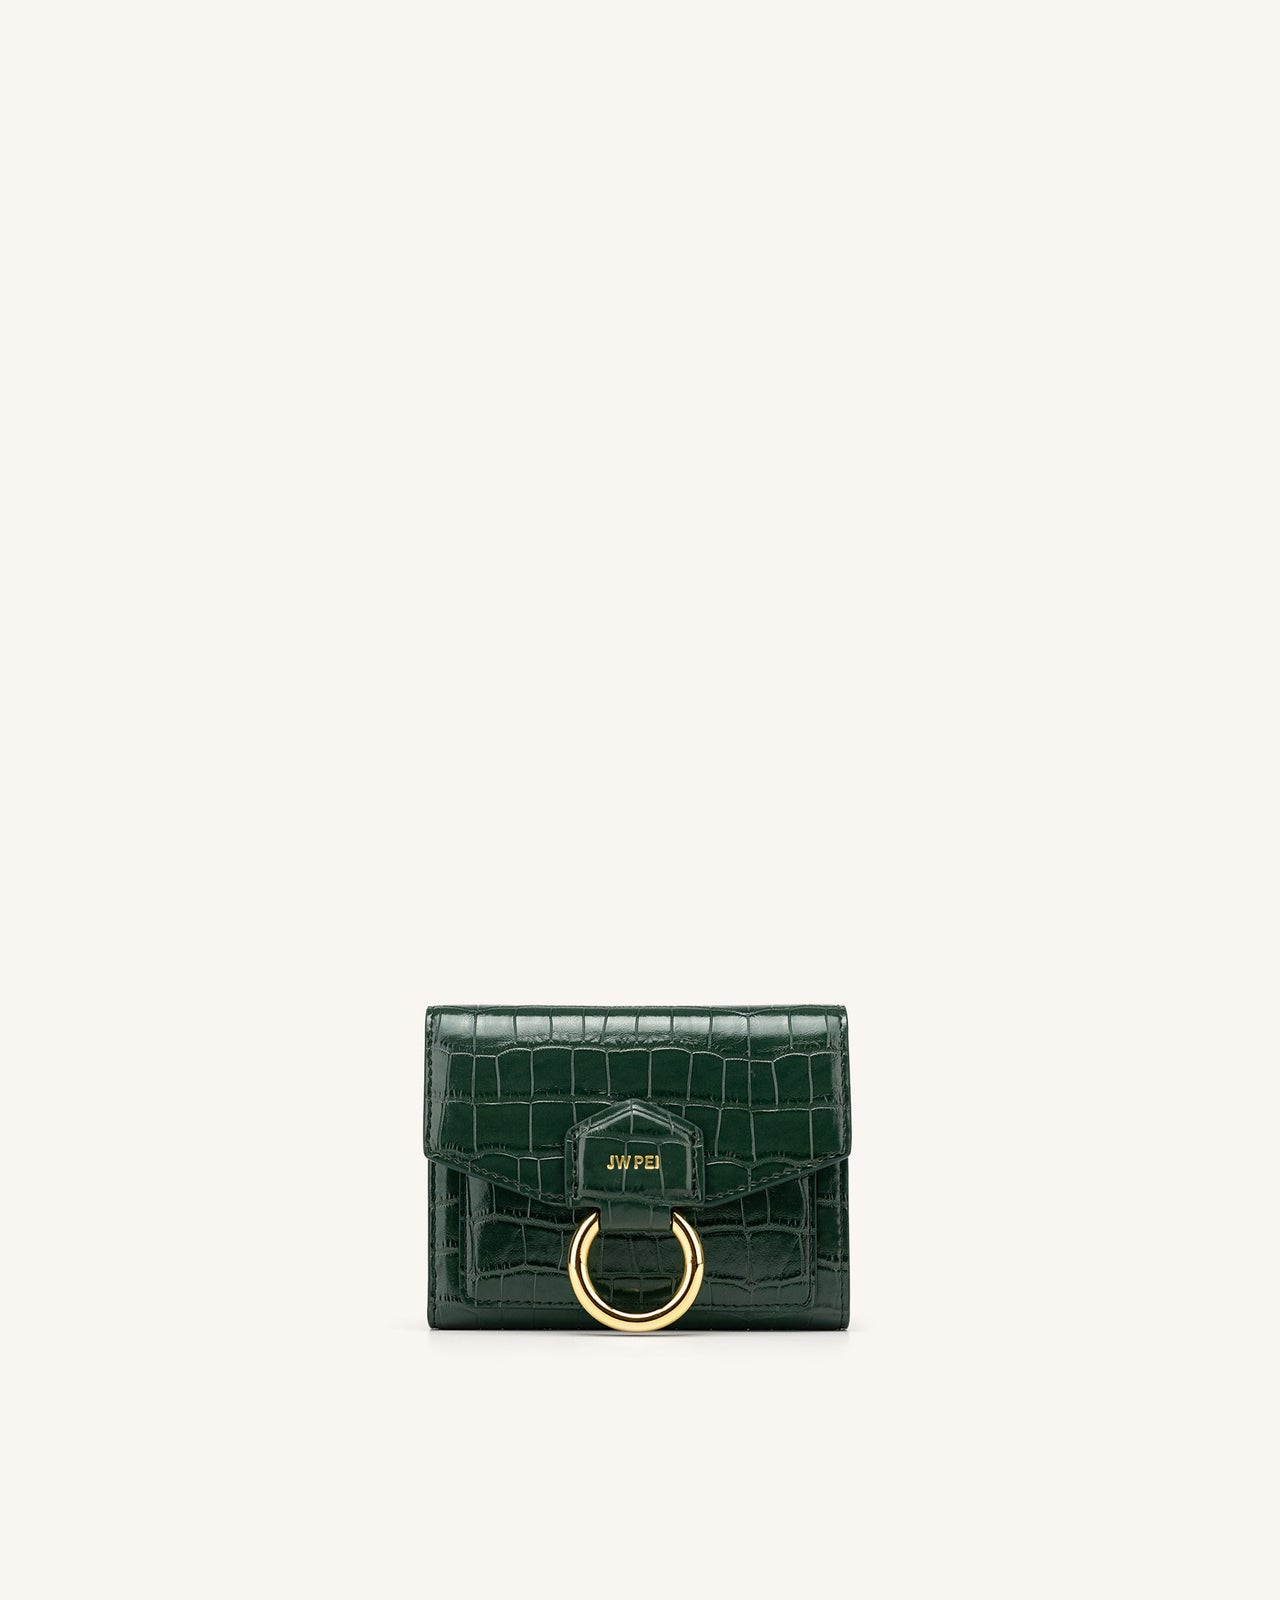 Stella 財布 - 濃い緑 クロコ型押し